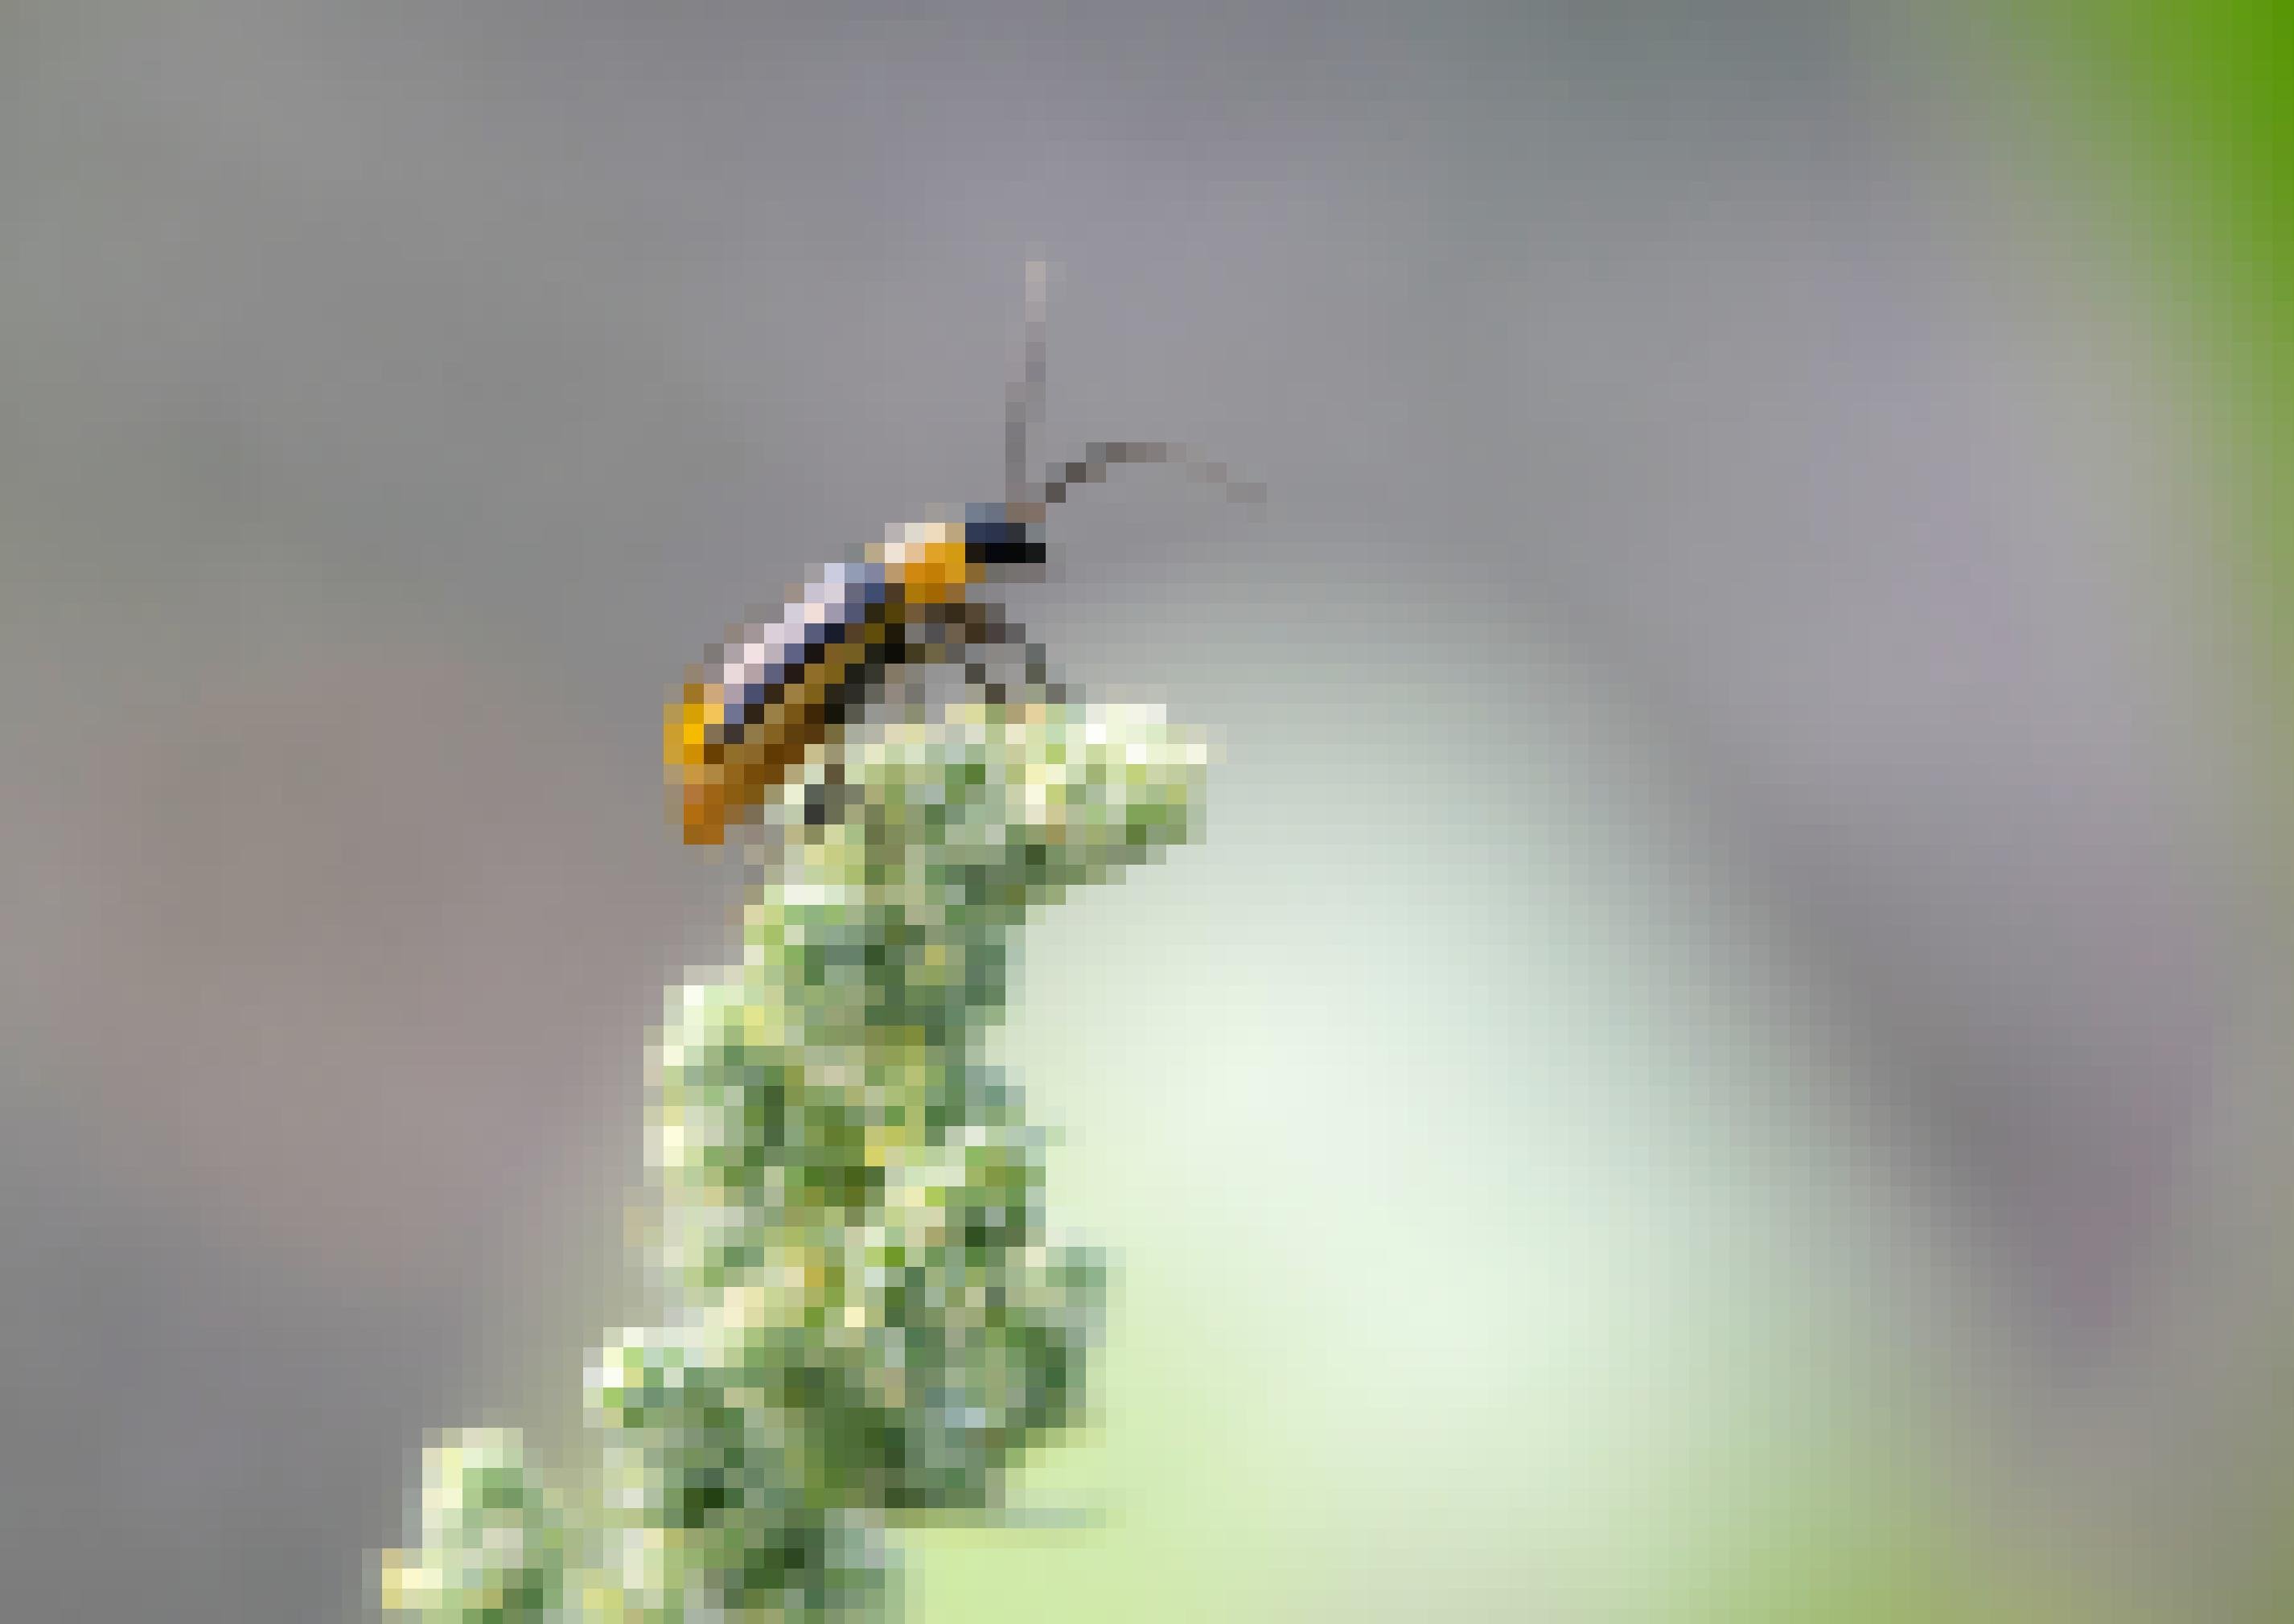 Ein länglicher gelber Käfer mit dunkelbraunem Kopf, langen Fühlern und dunkelbraunen Längsstreifen sitzt auf einer Maisblüte.